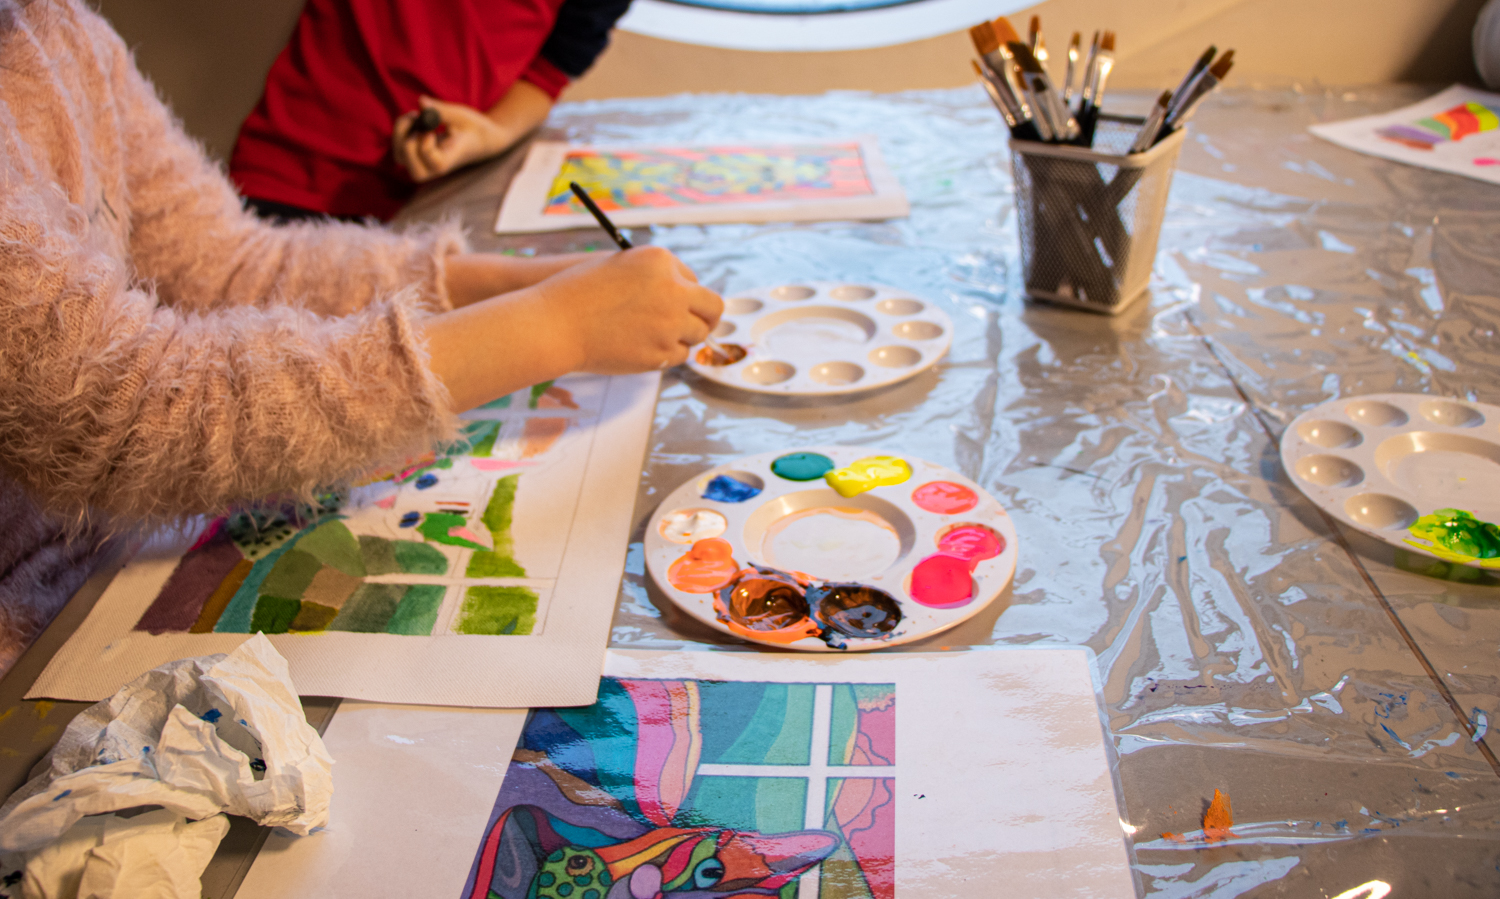 Bord med maling i ulike farger, pensler og hendene til to barn som maler bilder.